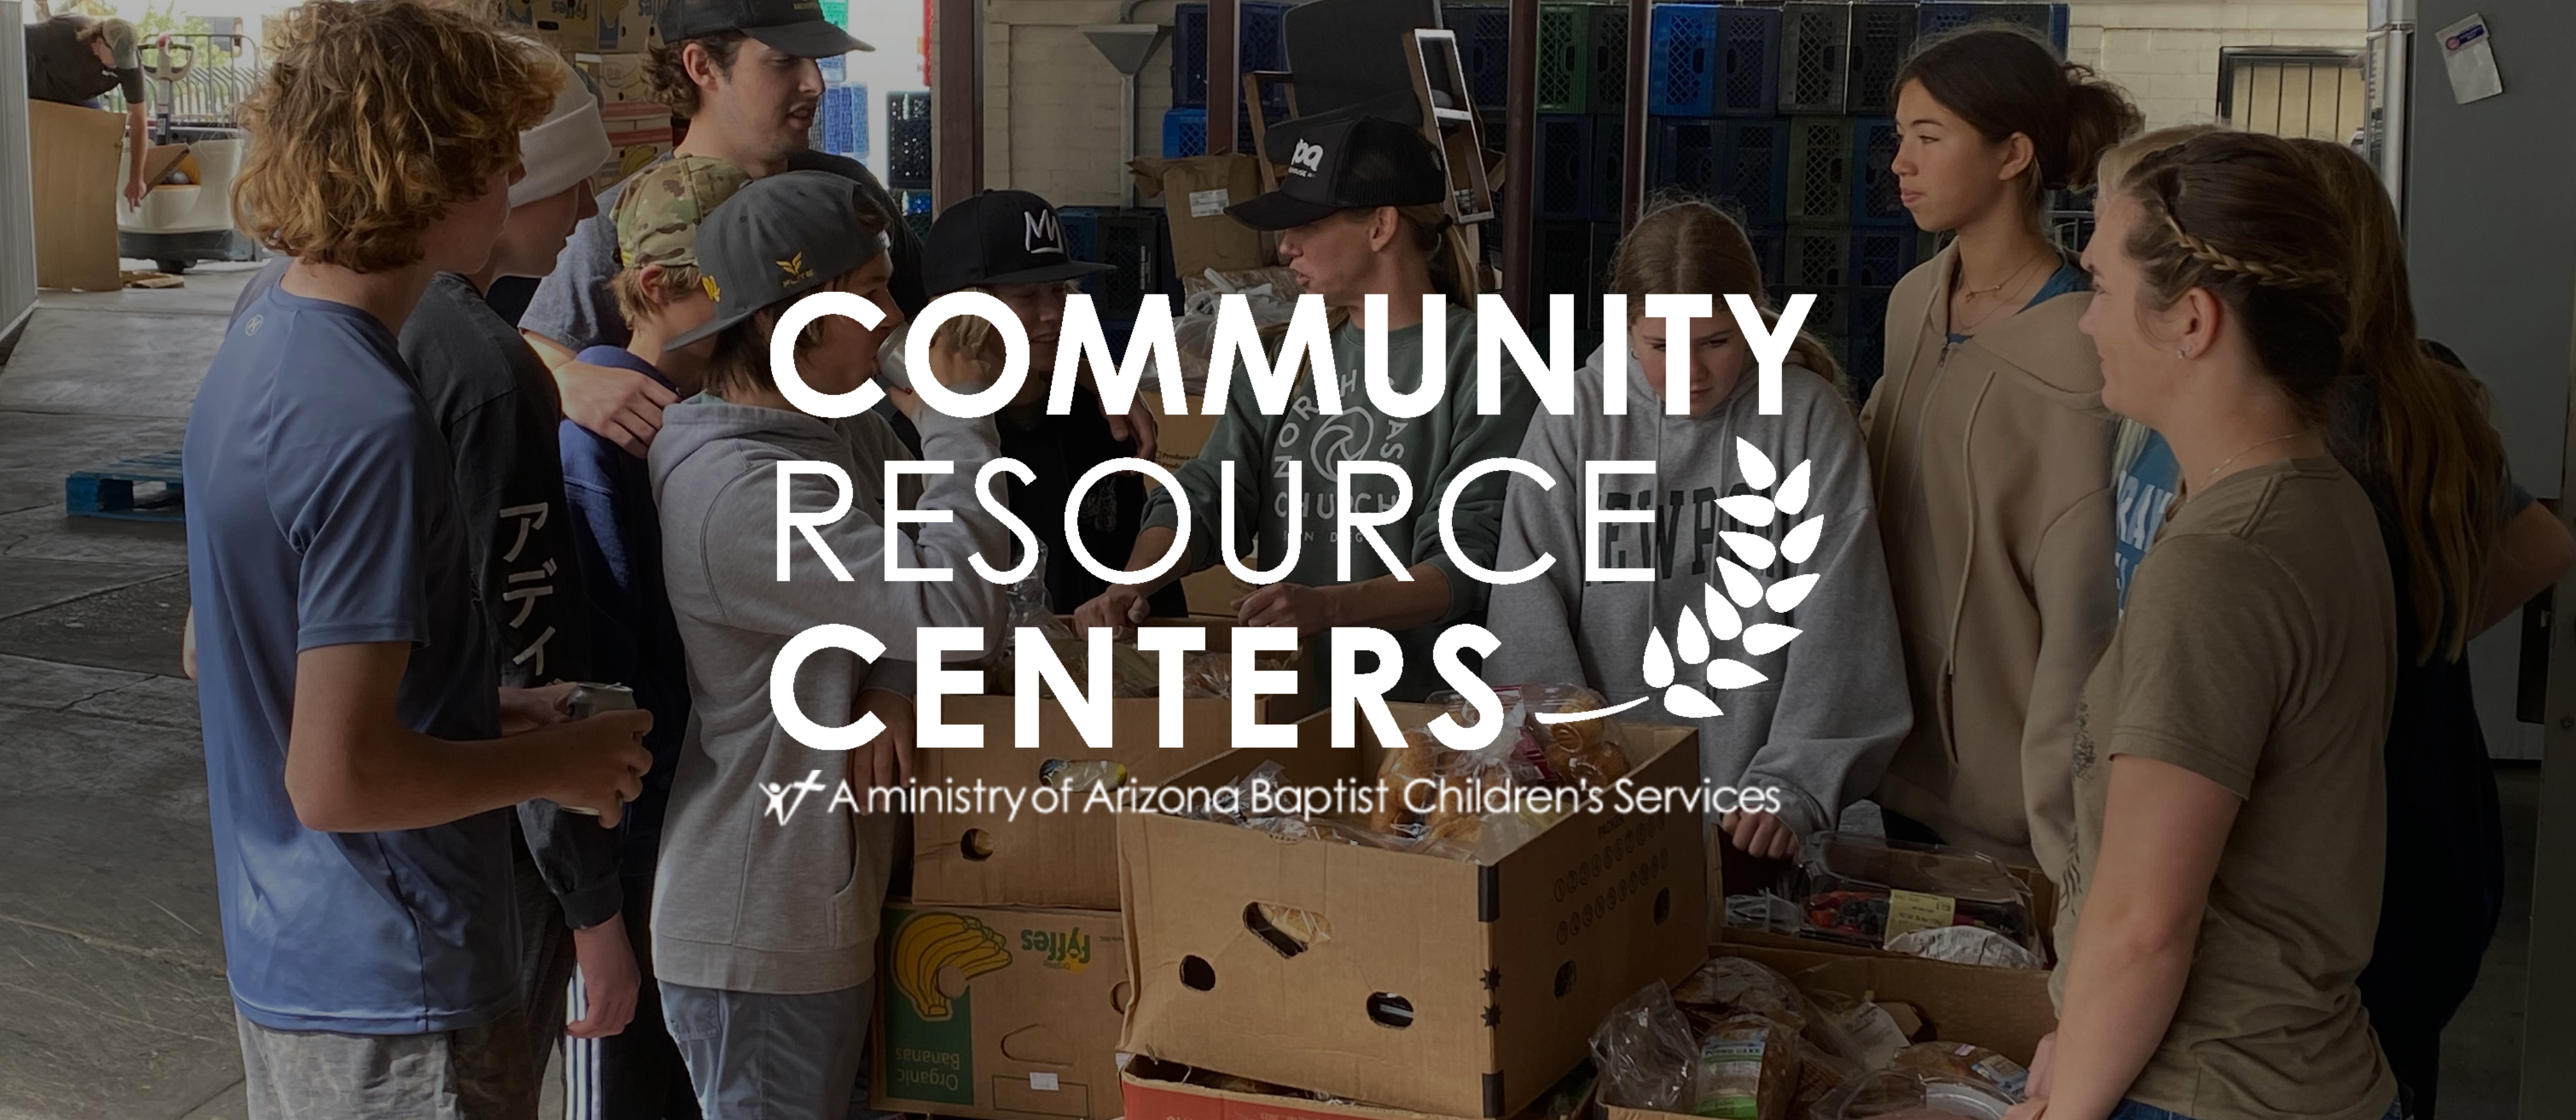 Spring Community Resource Center Updates